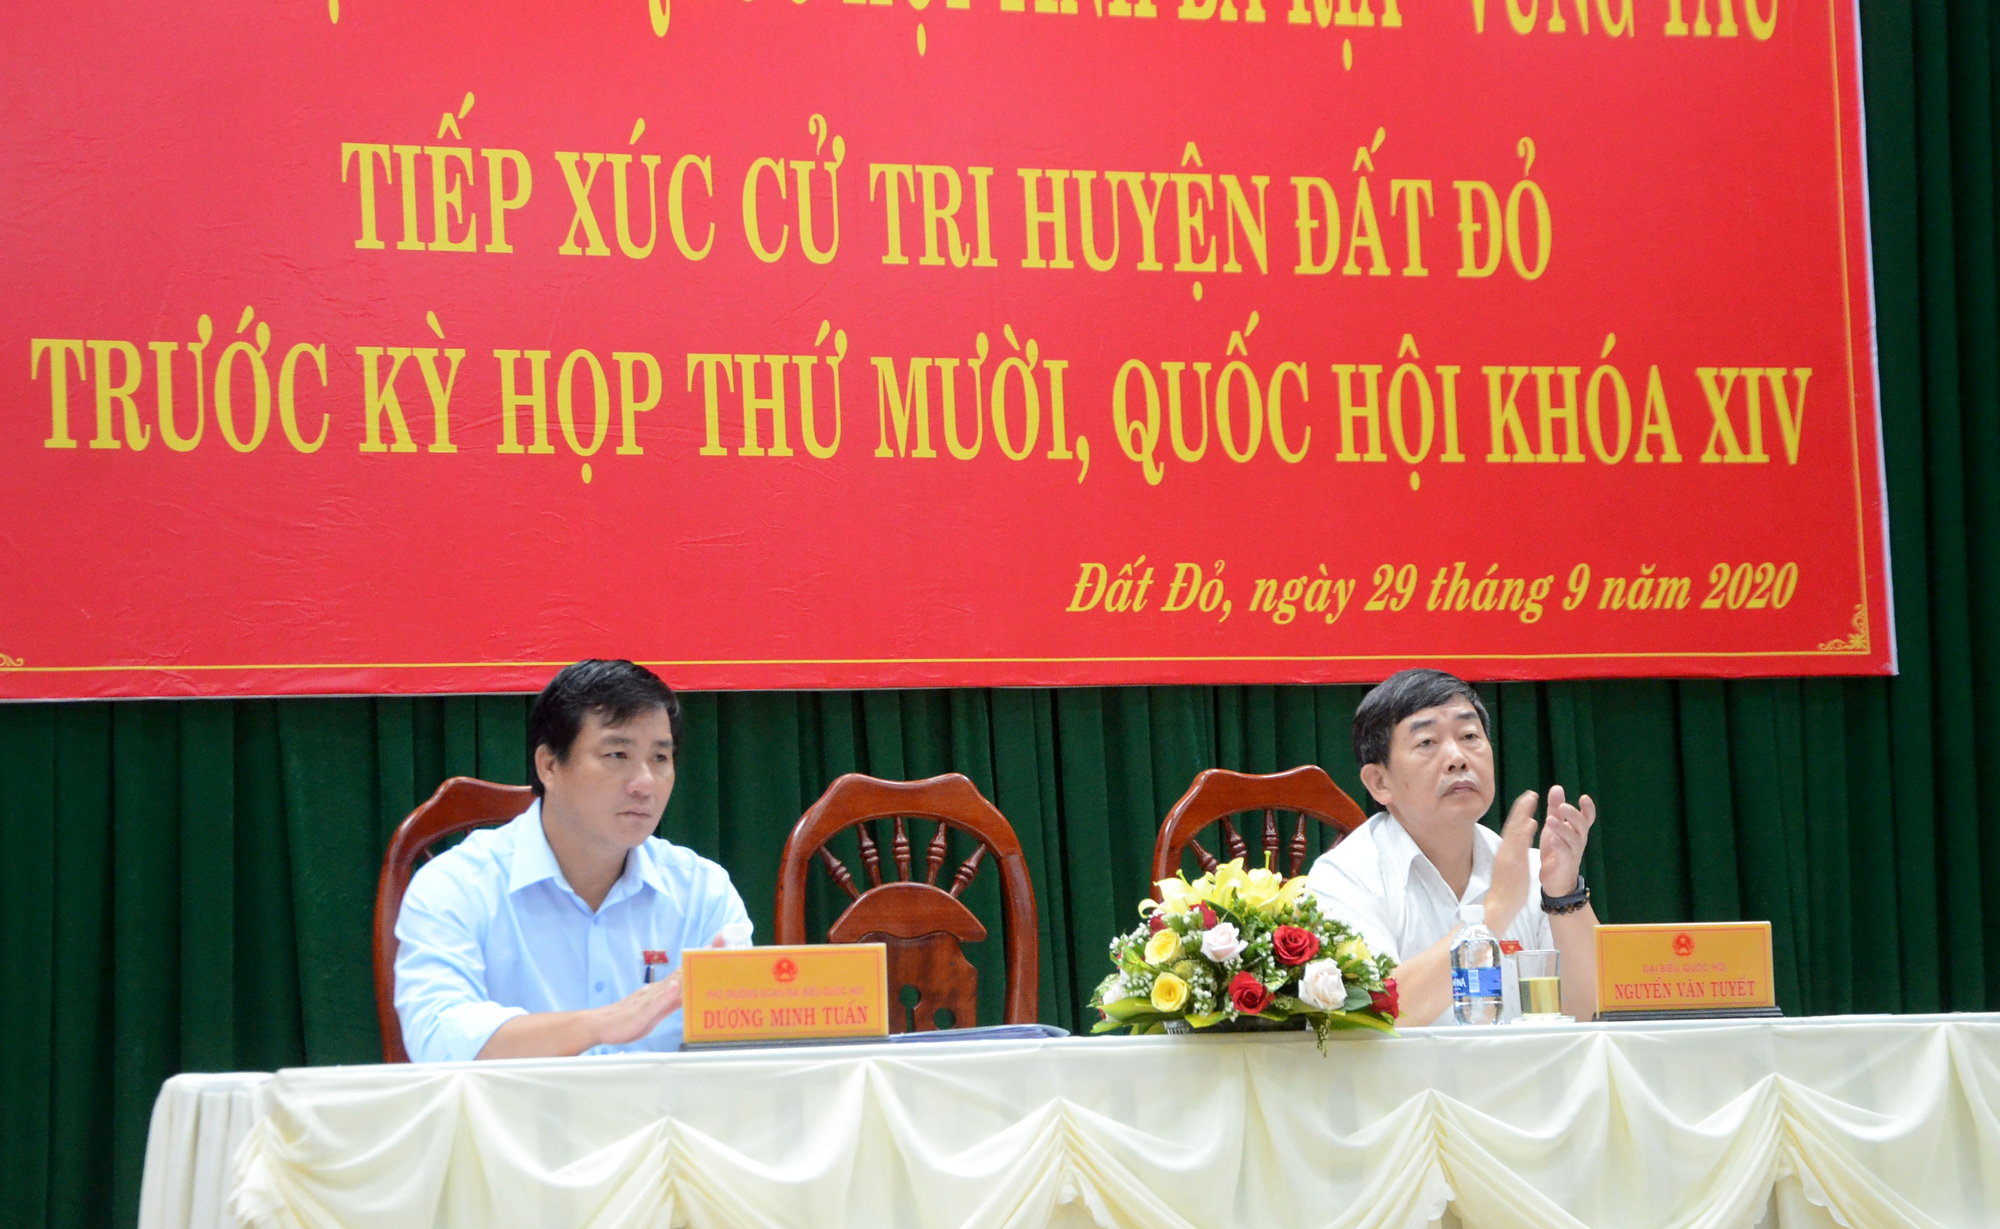 Các đại biểu: Dương Minh Tuấn, Phó Trưởng đoàn ĐBQH tỉnh (trái); Nguyễn Văn Tuyết, Phó Chủ nhiệm Ủy ban Văn hóa, giáo dục, thanh niên, thiếu niên và nhi đồng của Quốc hội TXCT tại huyện Đất Đỏ.